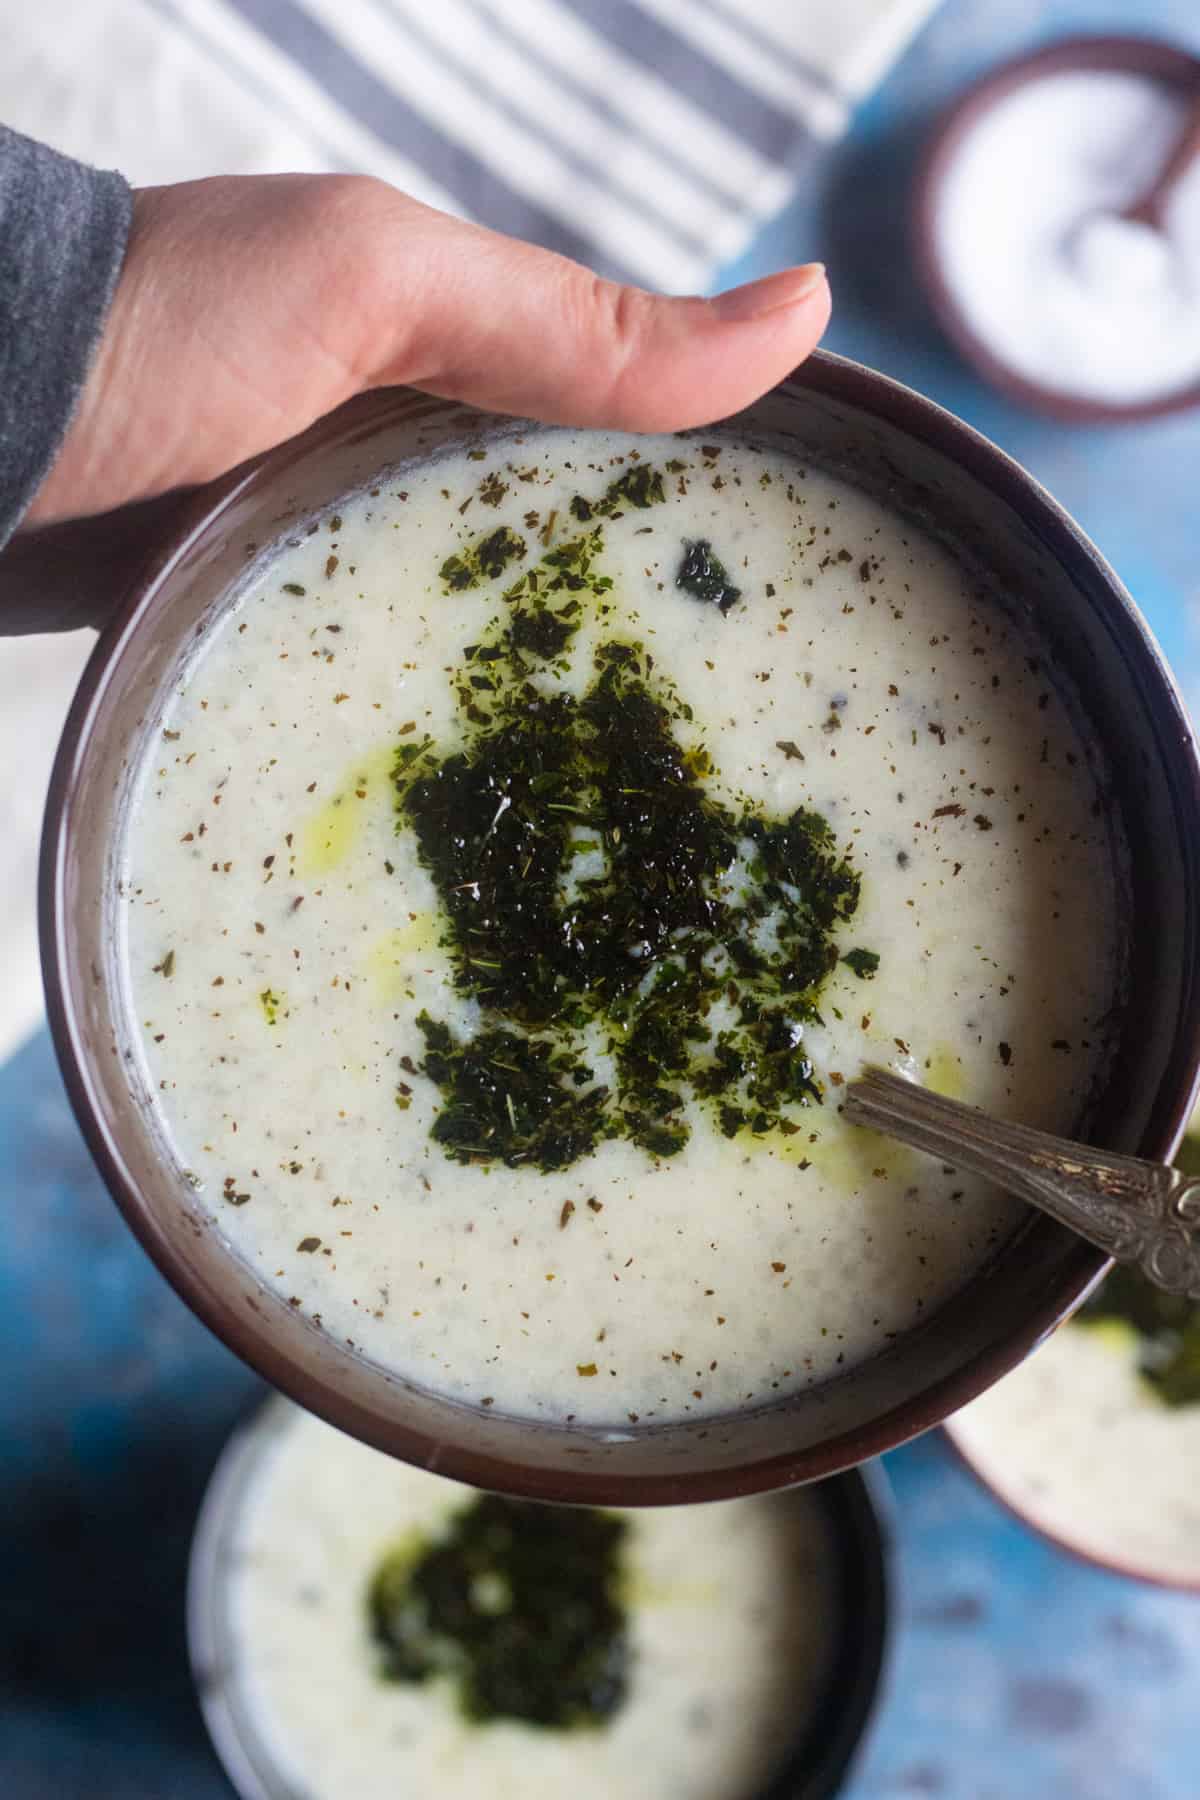 yayla corbasi or Turkish yogurt soup is easy and very tasty. 